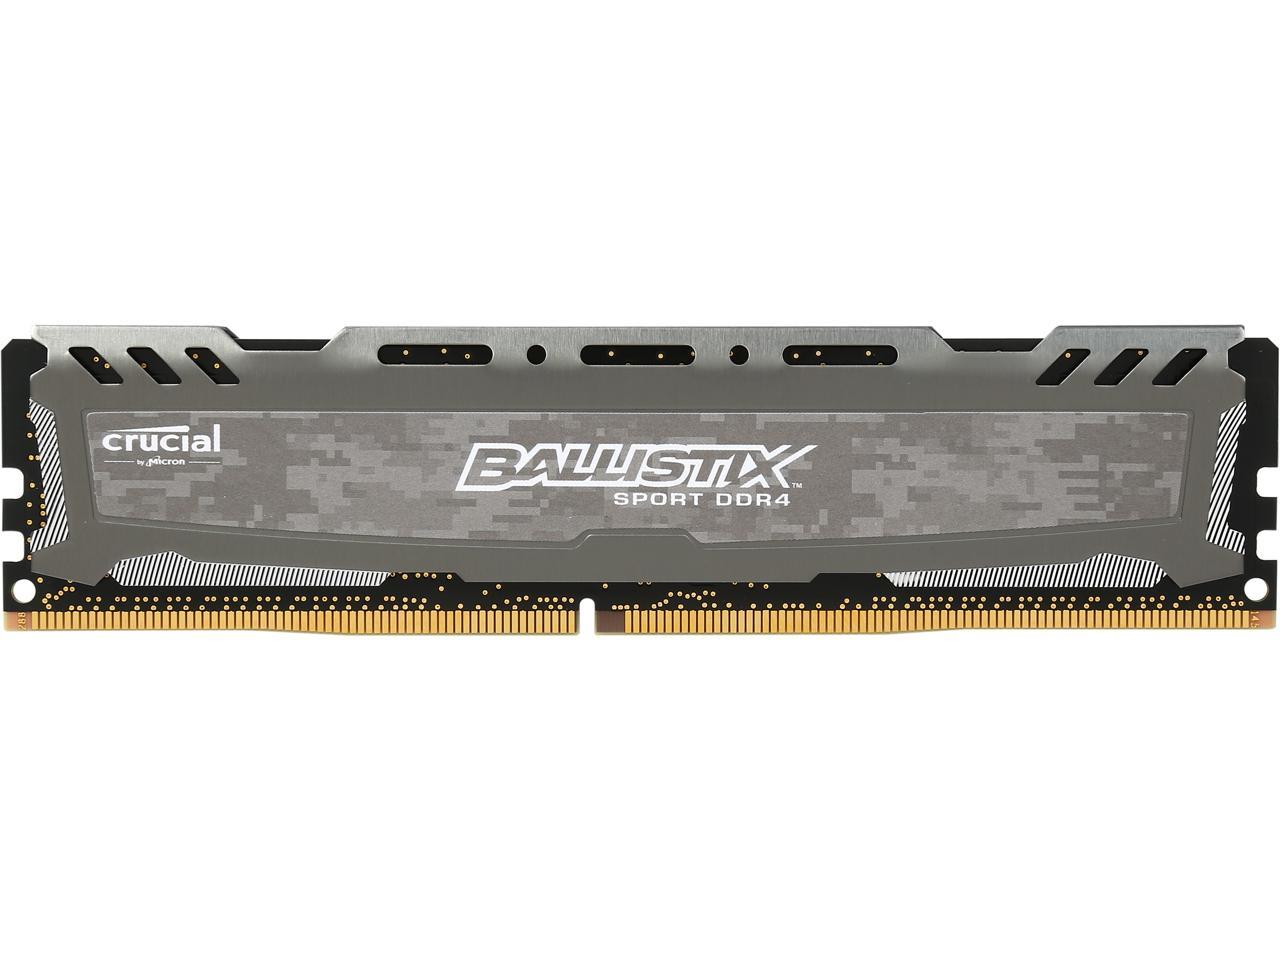 Ballistix Sport LT 4GB 288-Pin DDR4 SDRAM DDR4 2400 (PC4 19200) Memory Model BLS4G4D240FSB